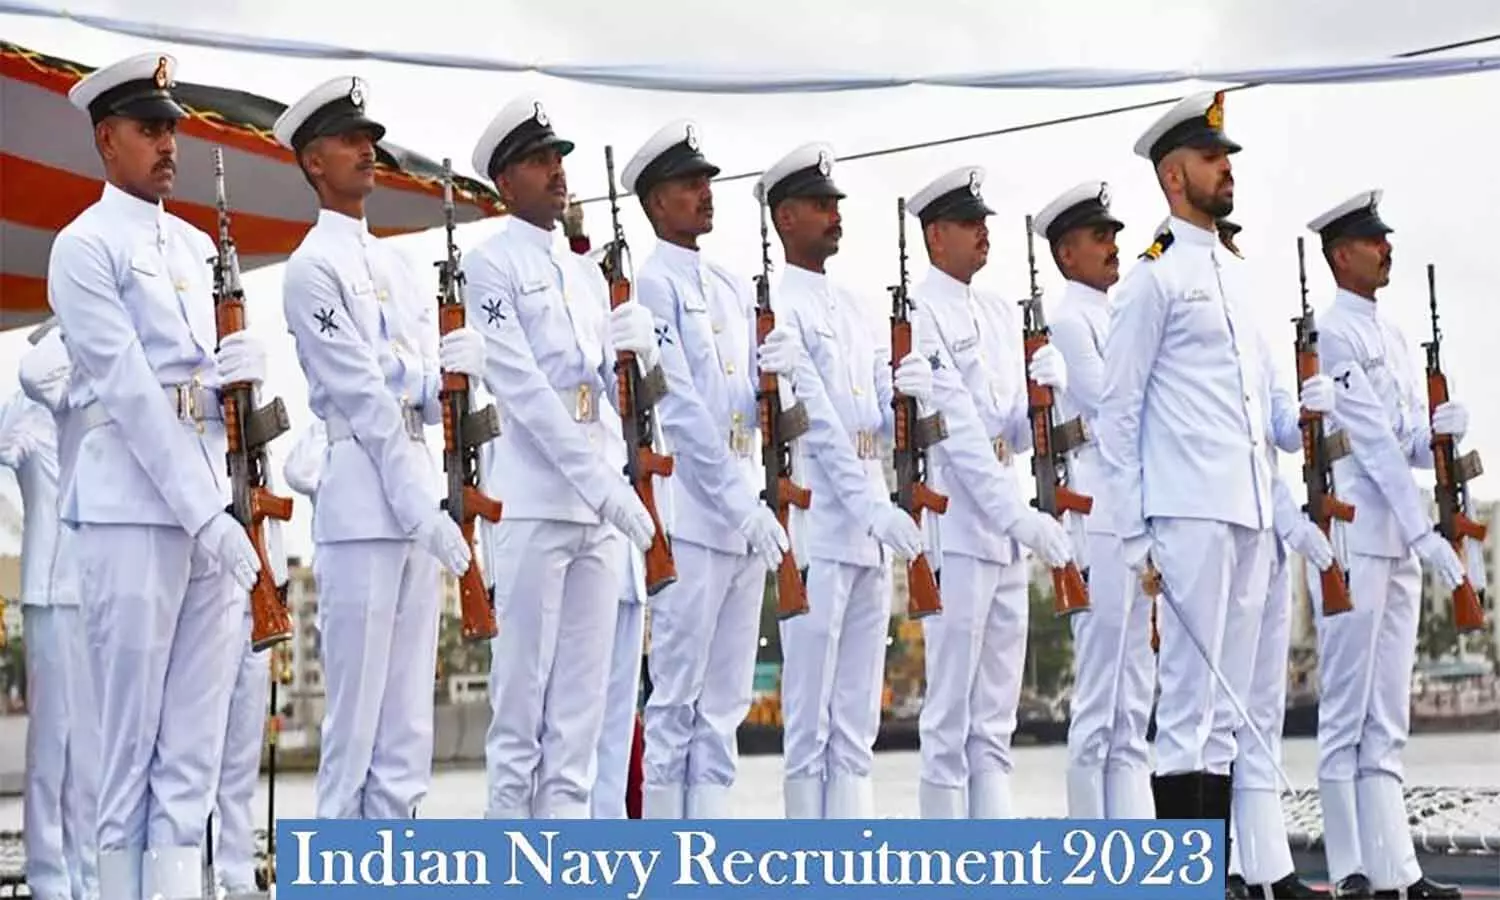 Indian Navy Recruitment 2023: इंडियन नेवी में निकली 242 पदों पर निकली वैकेंसी, फटाफट जान लें पद और क्या होनी चाहिए योग्यता